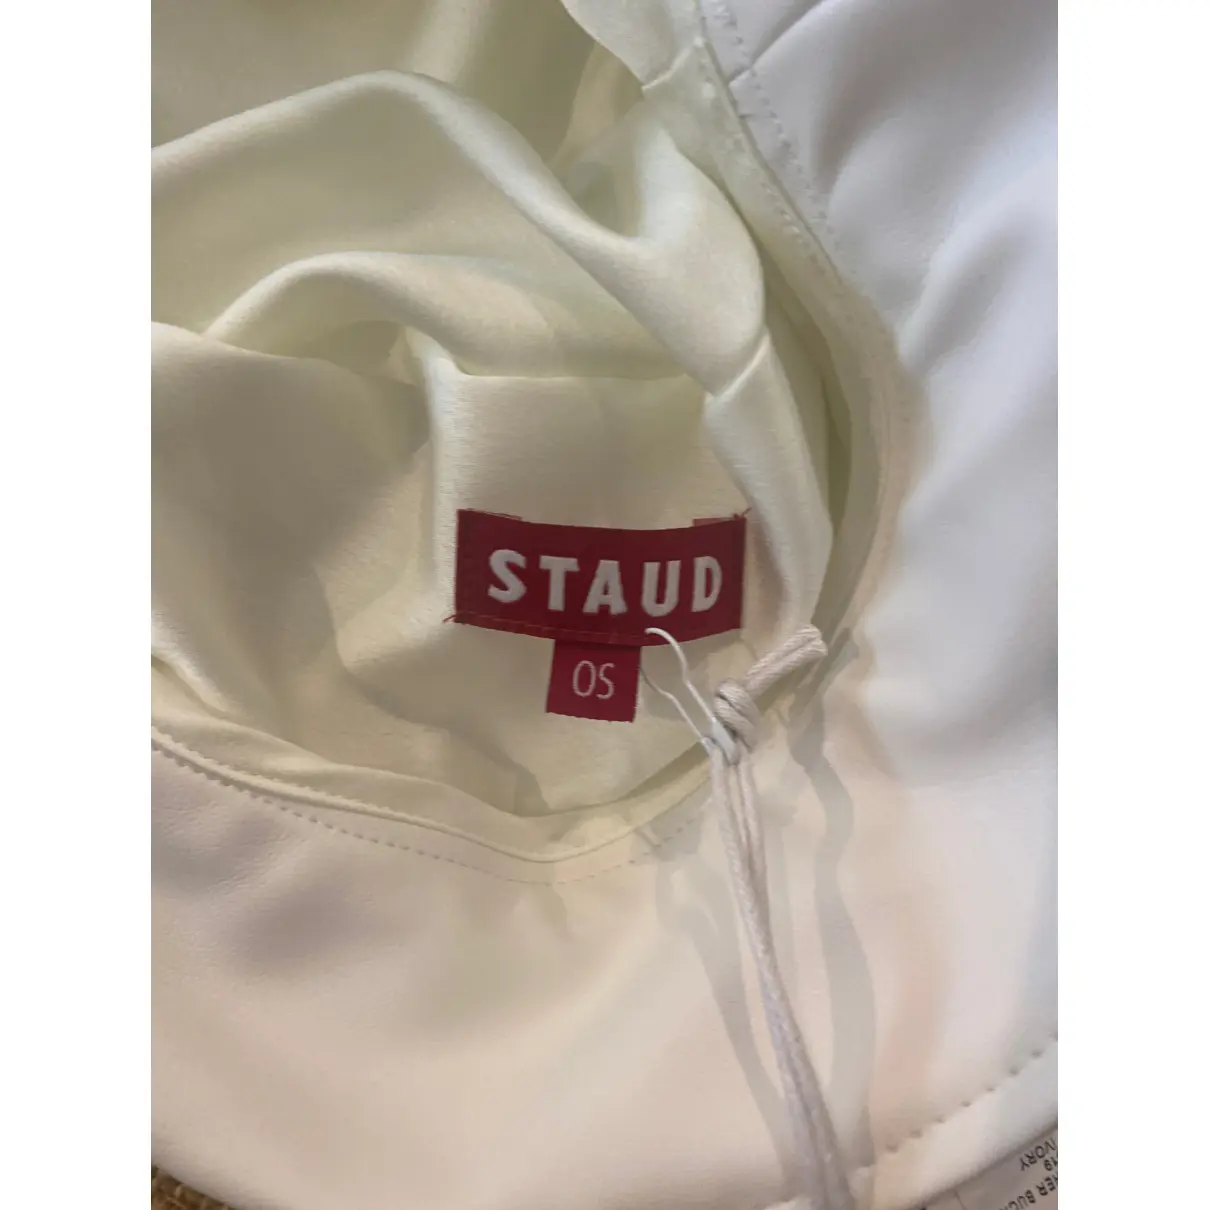 Buy Staud Hat online